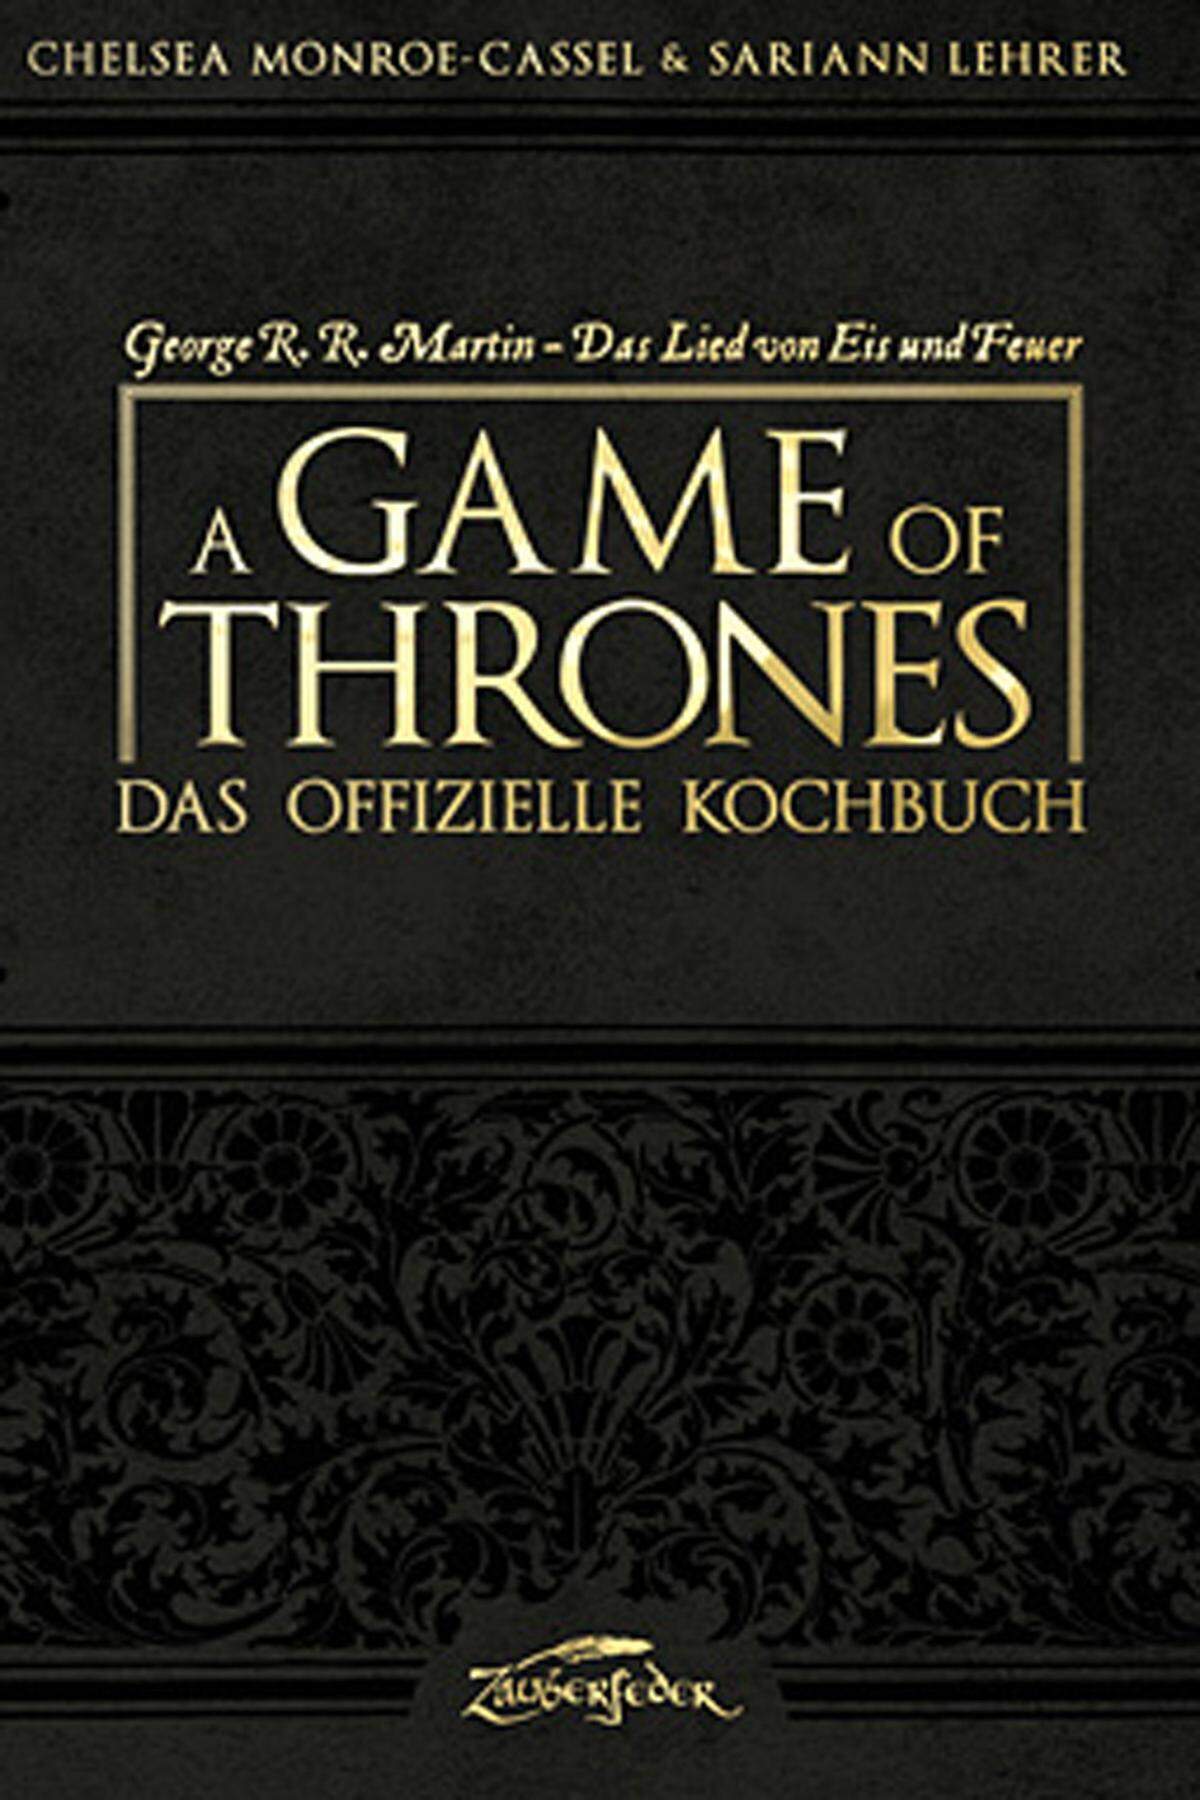 "A Game of Thrones – Das offizielle Kochbuch" von Chelsea Monroe-Cassel & Sariann Lehrer erscheint ab 1. August 2013 im Zauberfeder Verlag. 224 Seiten, ISBN 978-3-938922-43-9, 24,90 Euro.